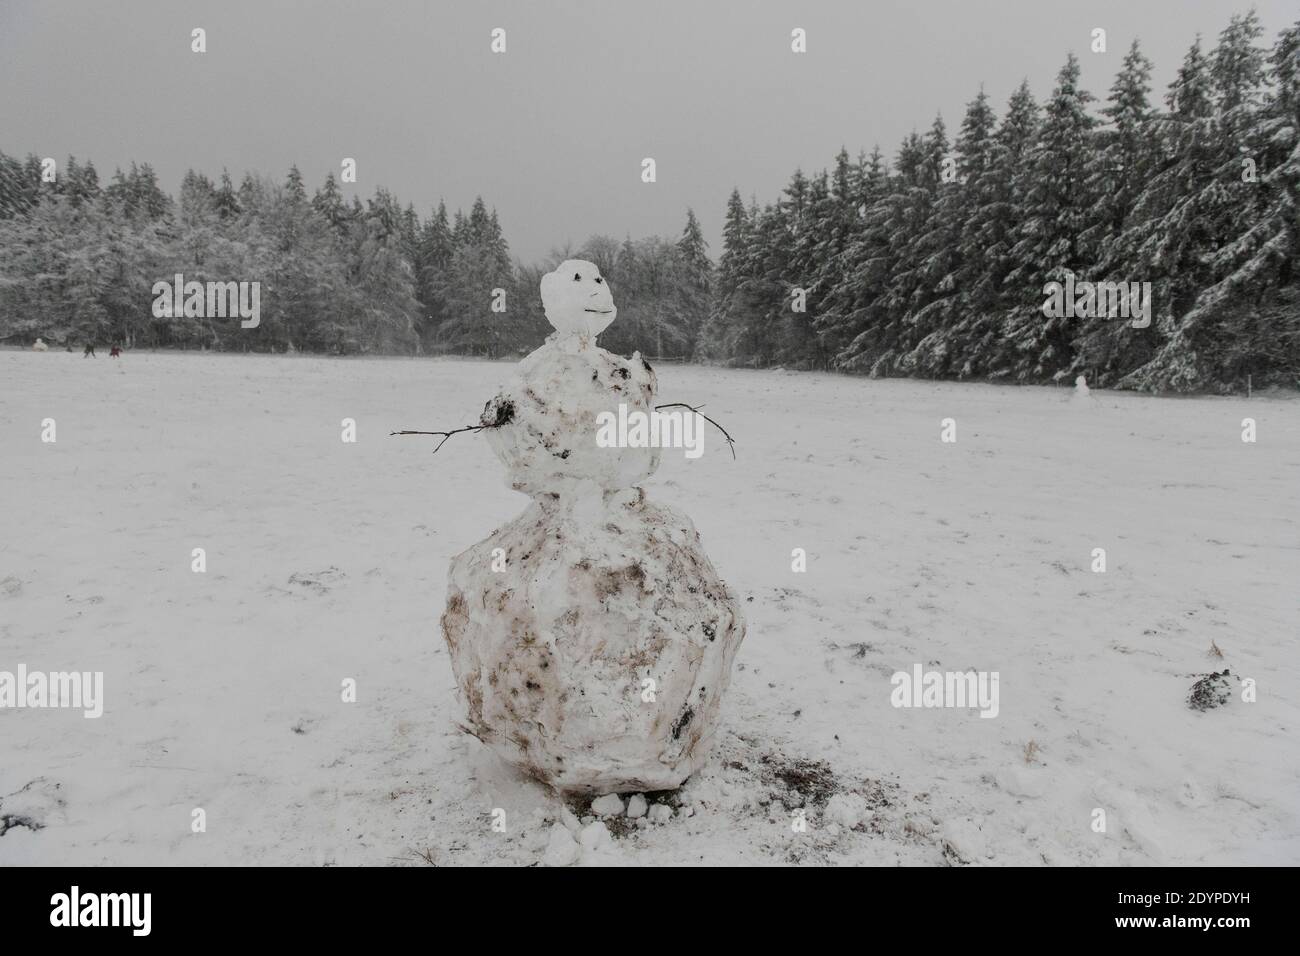 L'illustrazione mostra un paesaggio invernale con neve la regione Hautes Fagnes - Hoge Venen, nel Belgio orientale, domenica 27 dicembre 2020. Tempesta Bella portare Foto Stock